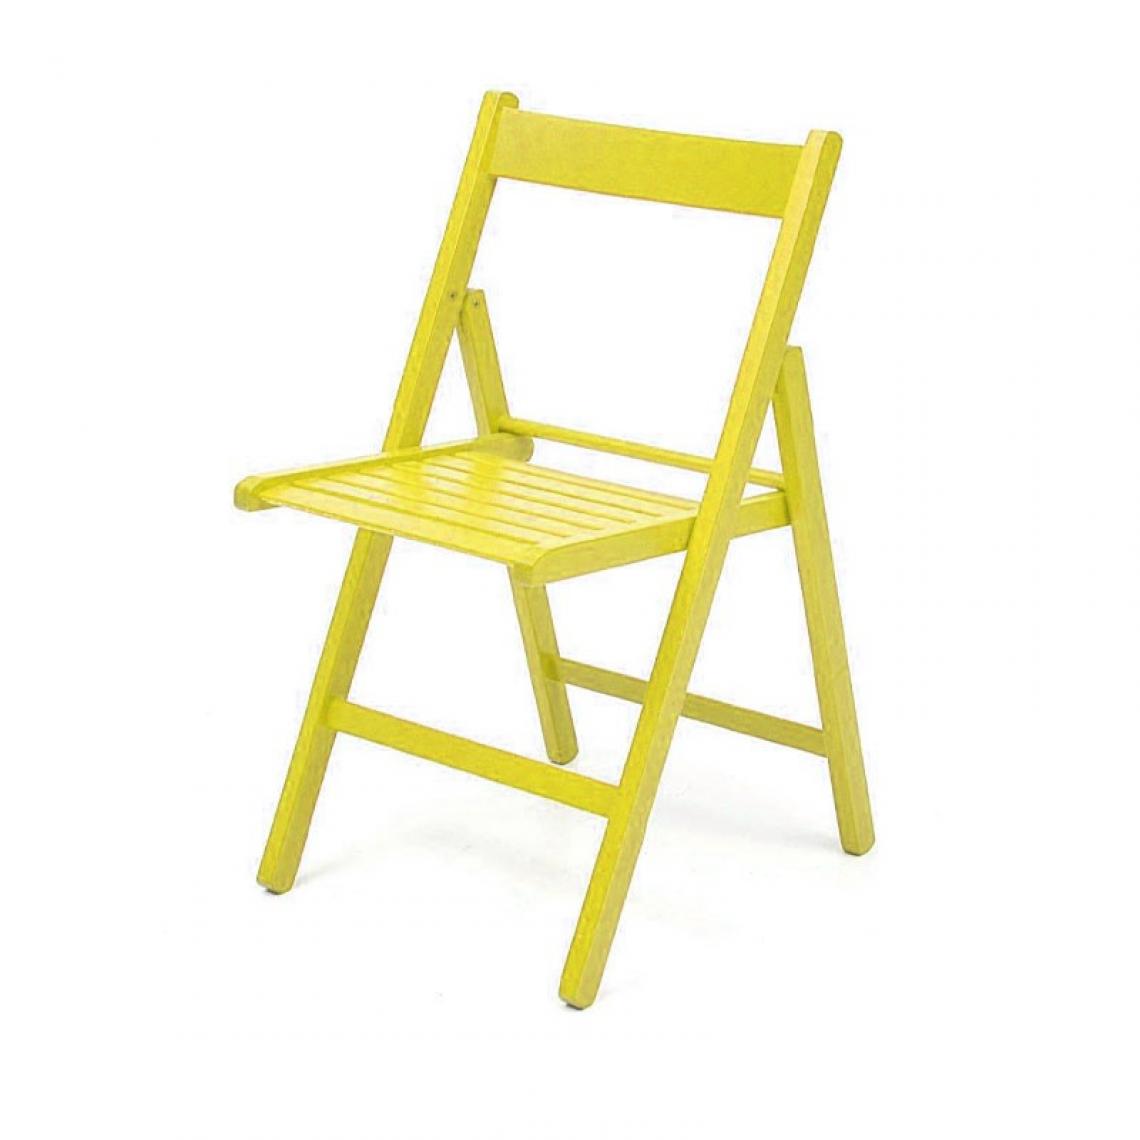 Webmarketpoint - Chaise pliante en hêtre jaune de haute qualité 43x48xh.79 cm - Chaises